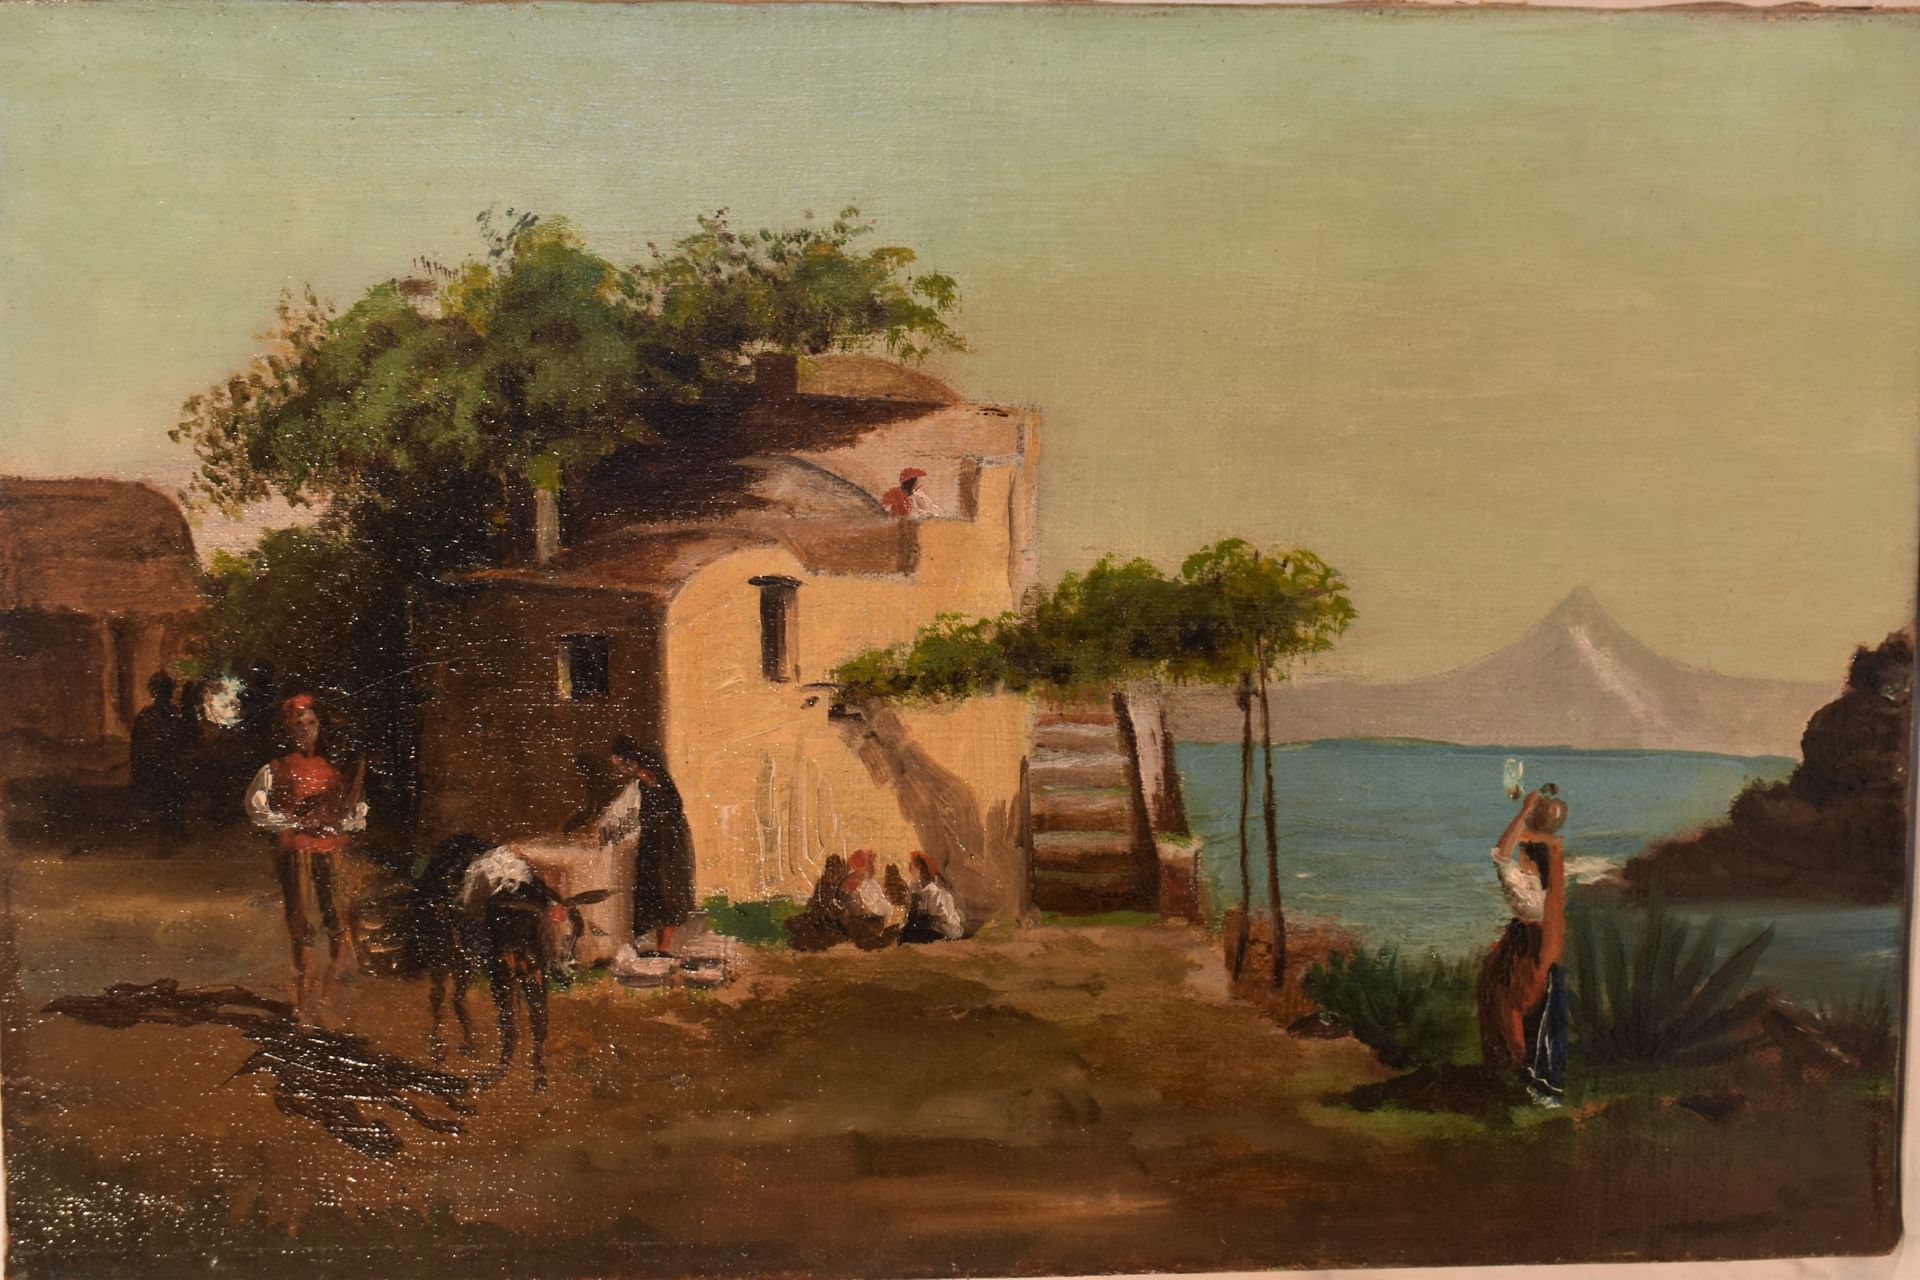 ESCUELA ITALIANA del siglo XIX: Pueblo animado junto al mar. Lienzo. Alto  21 - Ancho 32 cm